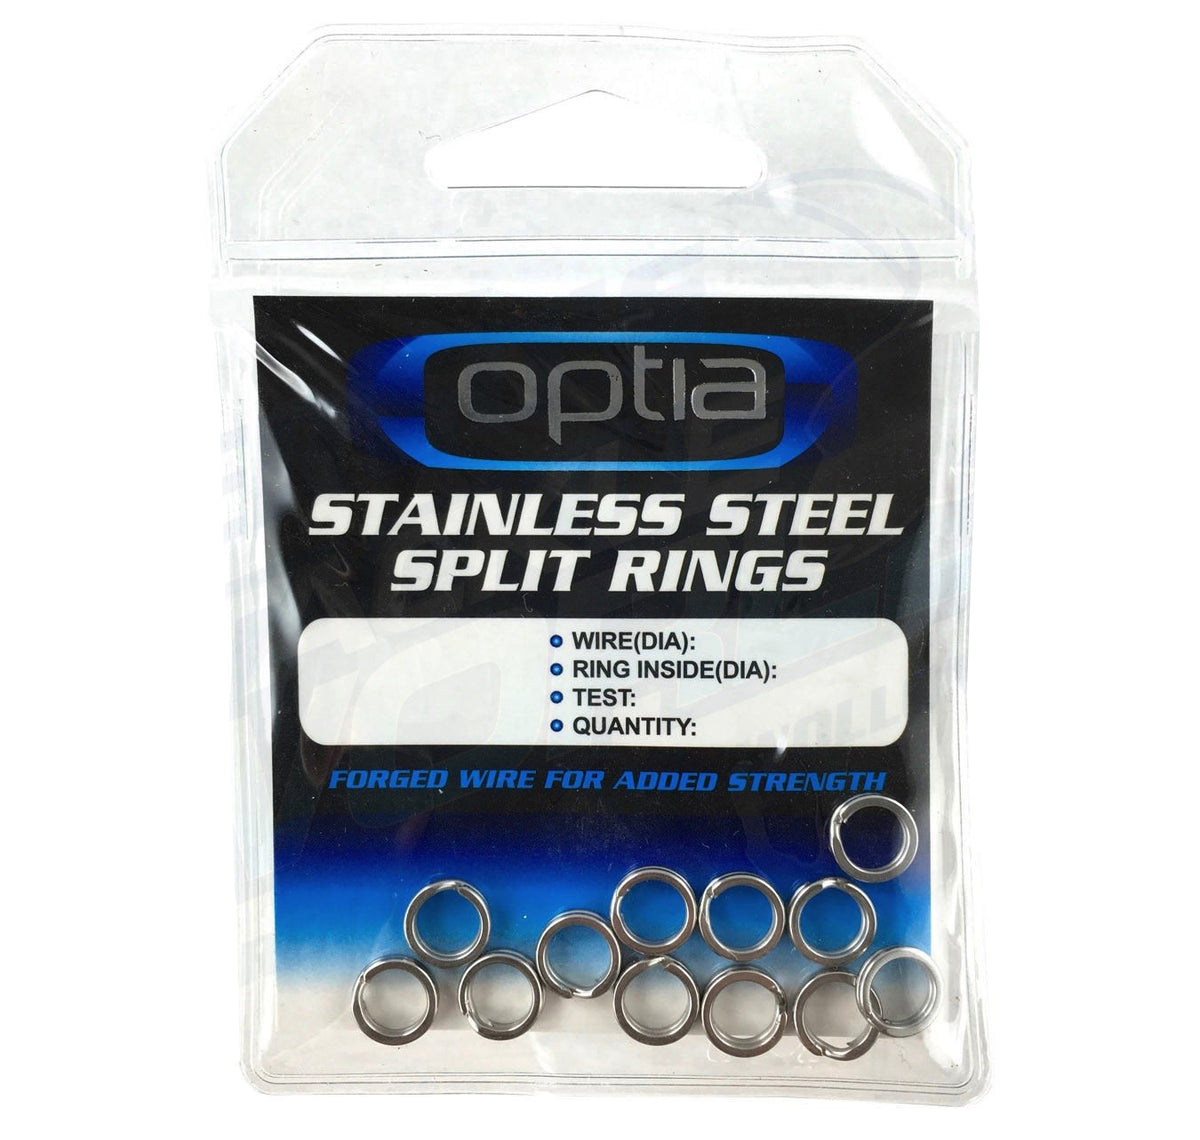 Optia Stainless Steel Split Rings